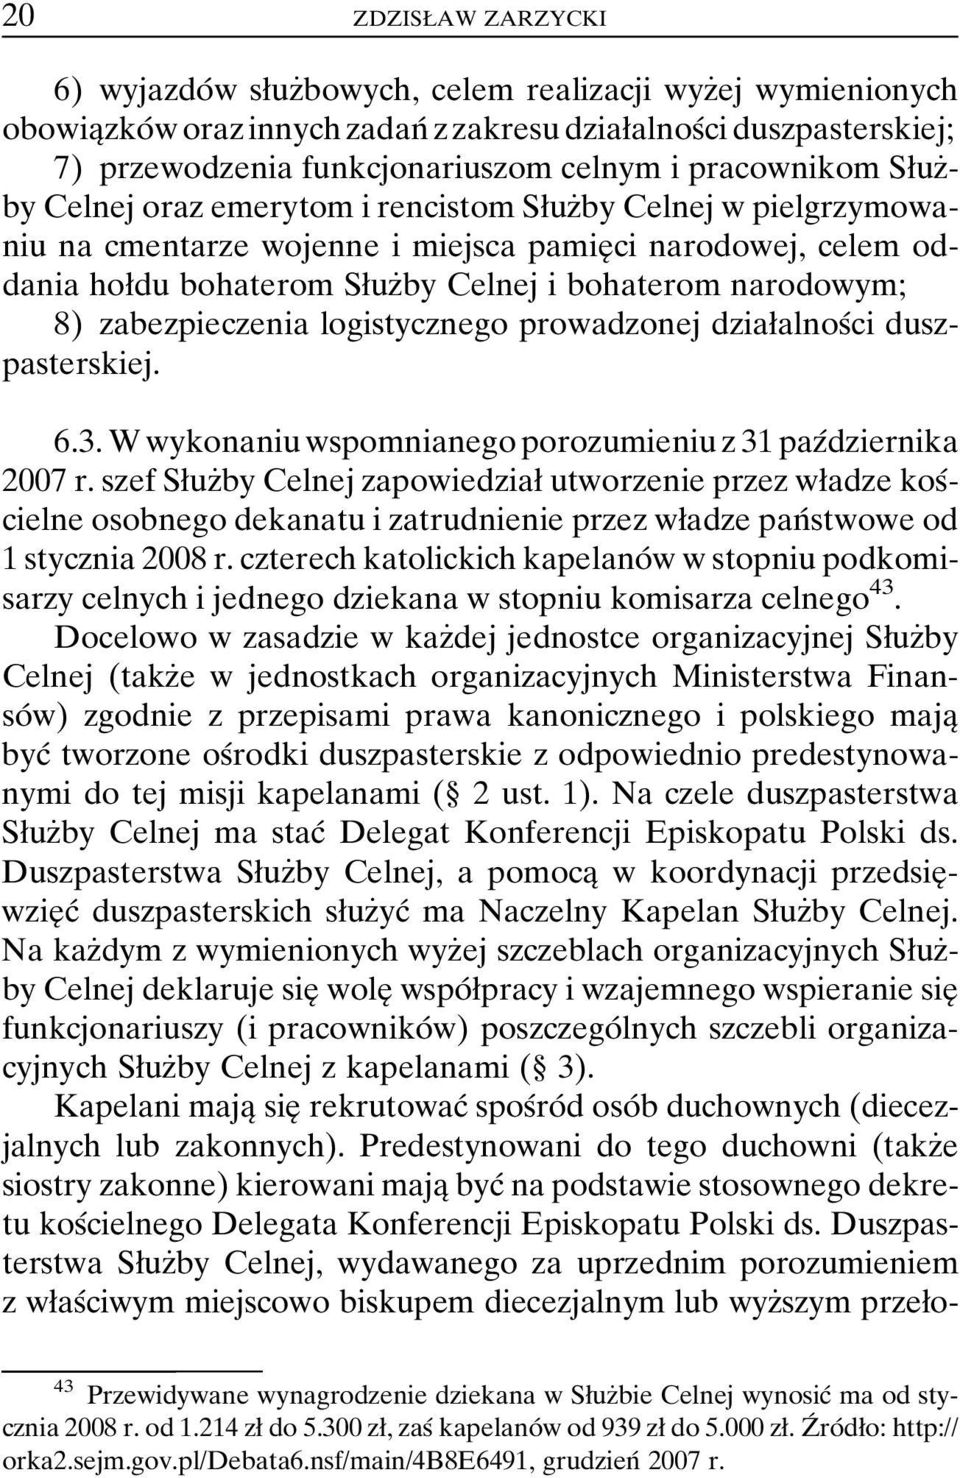 narodowym; 8) zabezpieczenia logistycznego prowadzonej dziaøalnosâci duszpasterskiej. 6.3. W wykonaniu wspomnianego porozumieniu z 31 pazâdziernika 2007 r.